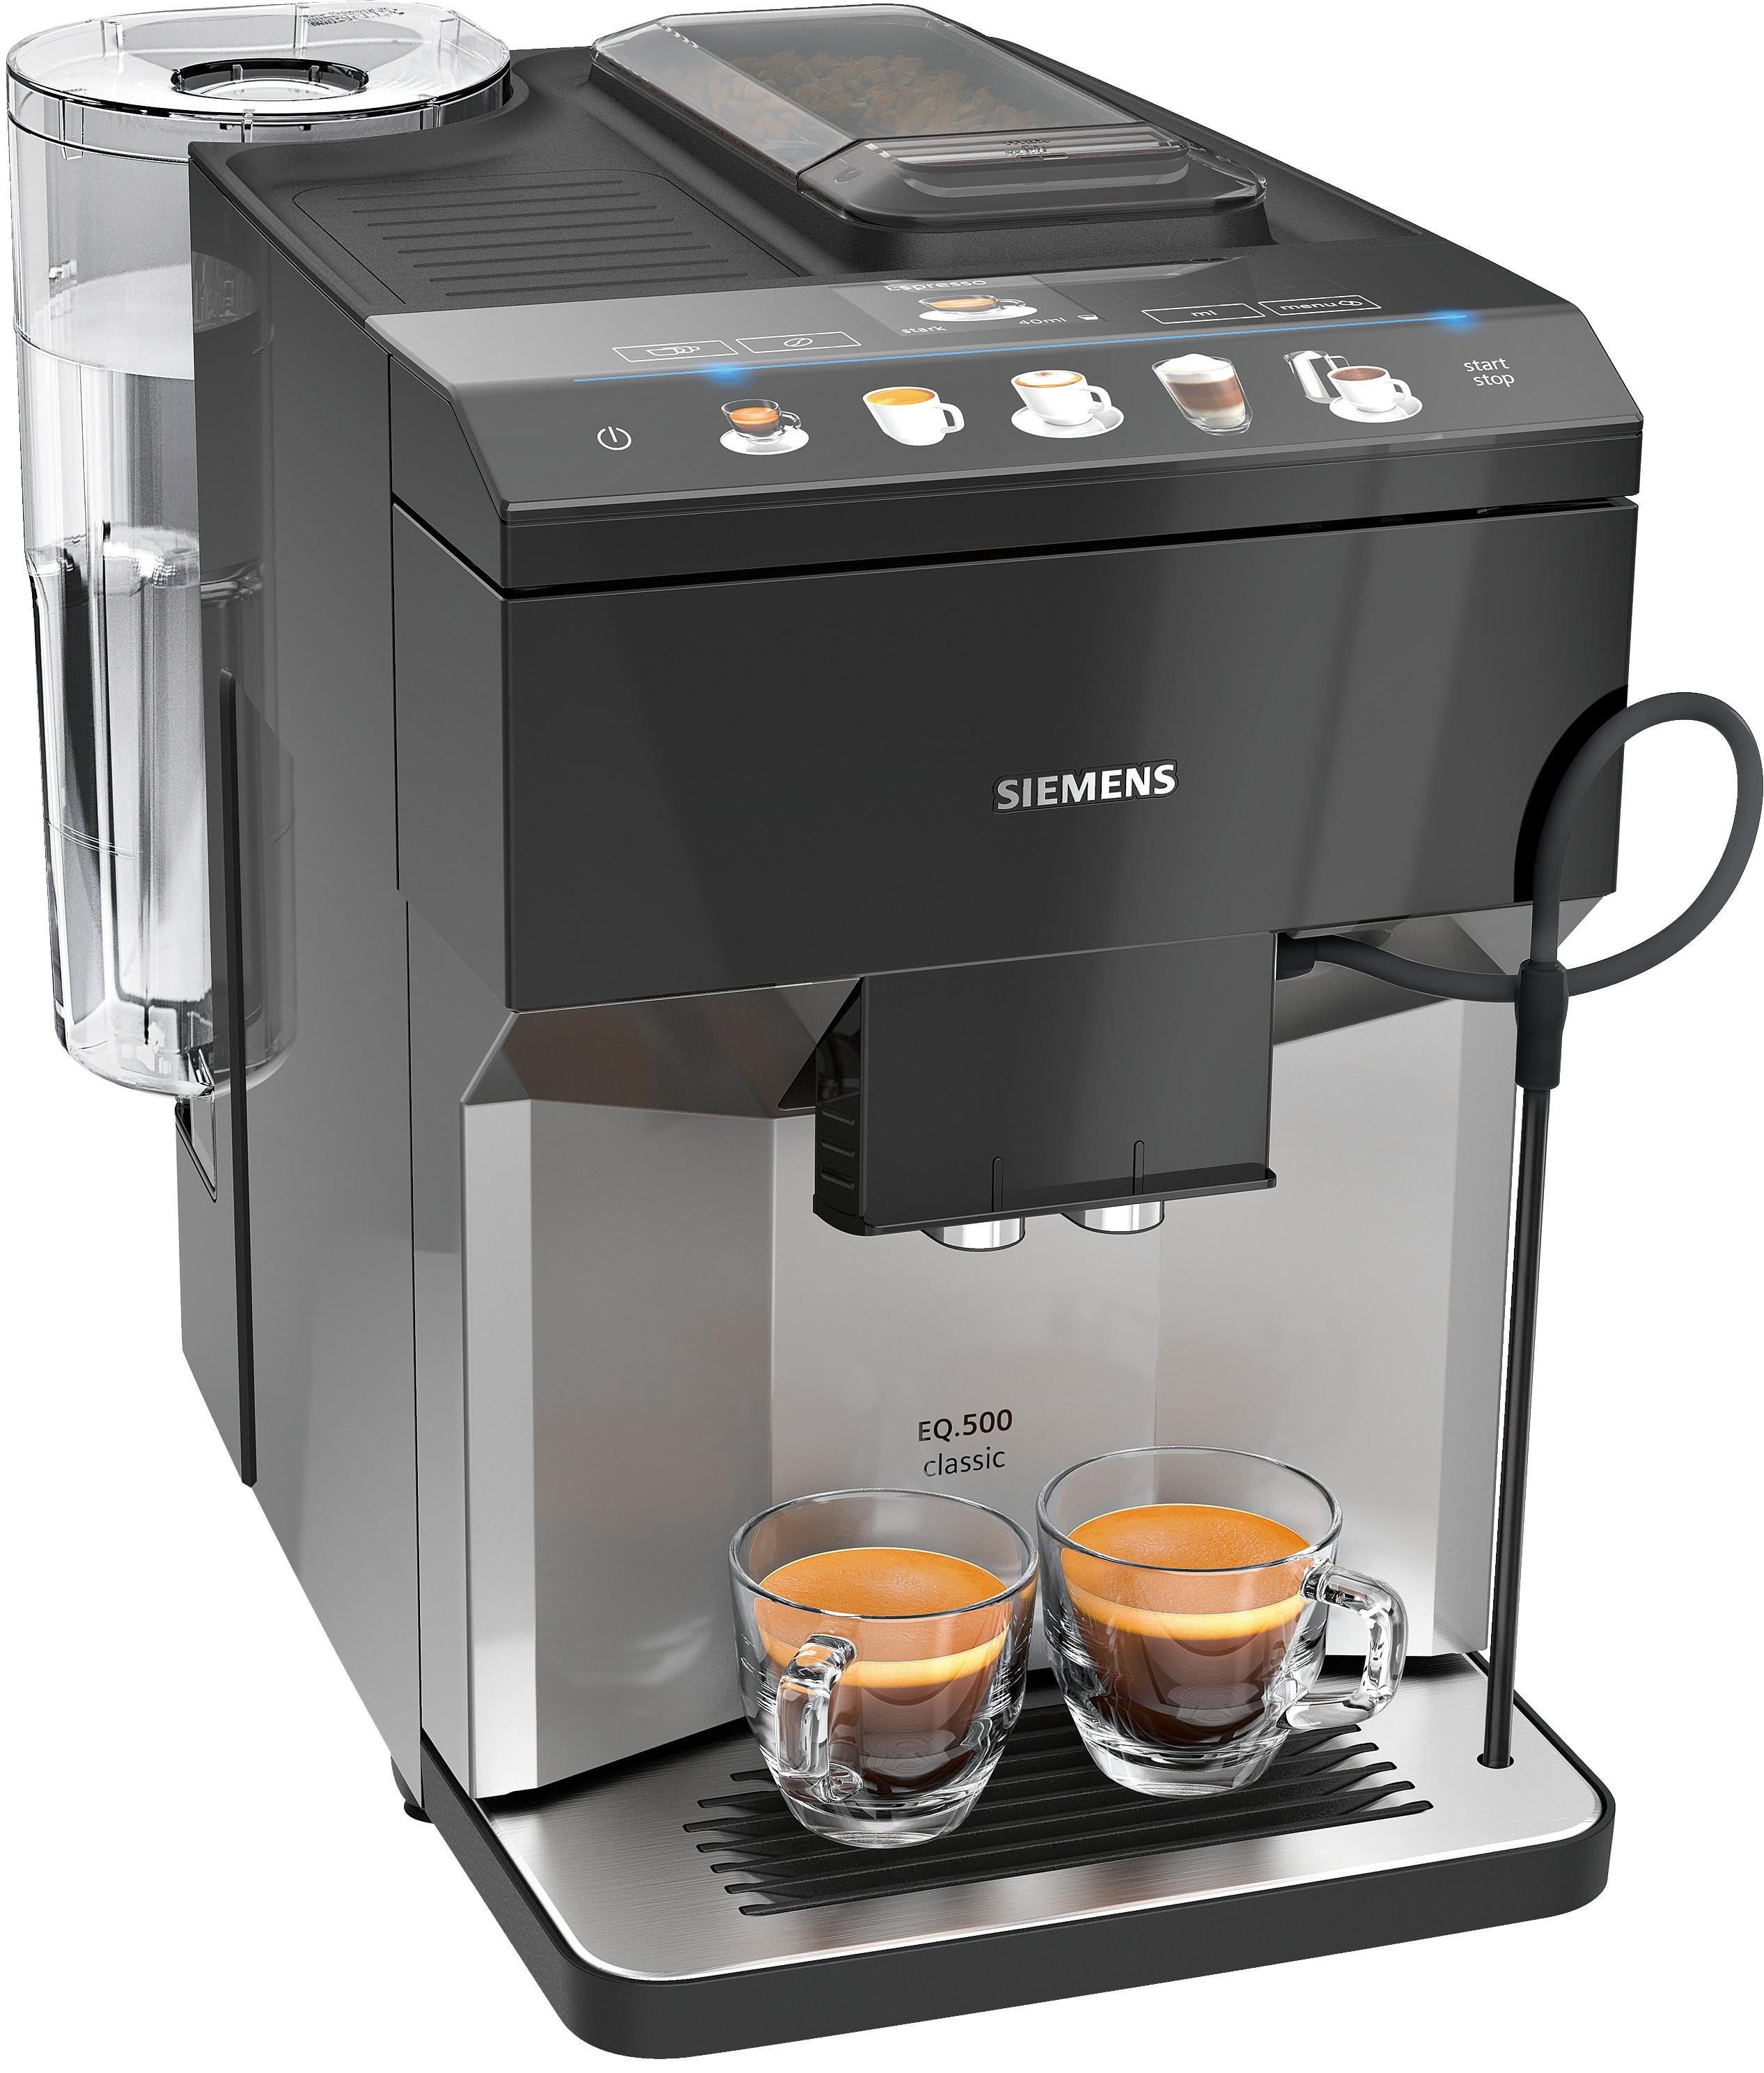 SIEMENS EQ.500 classic TP503D04 grau Kaffeevollautomat 